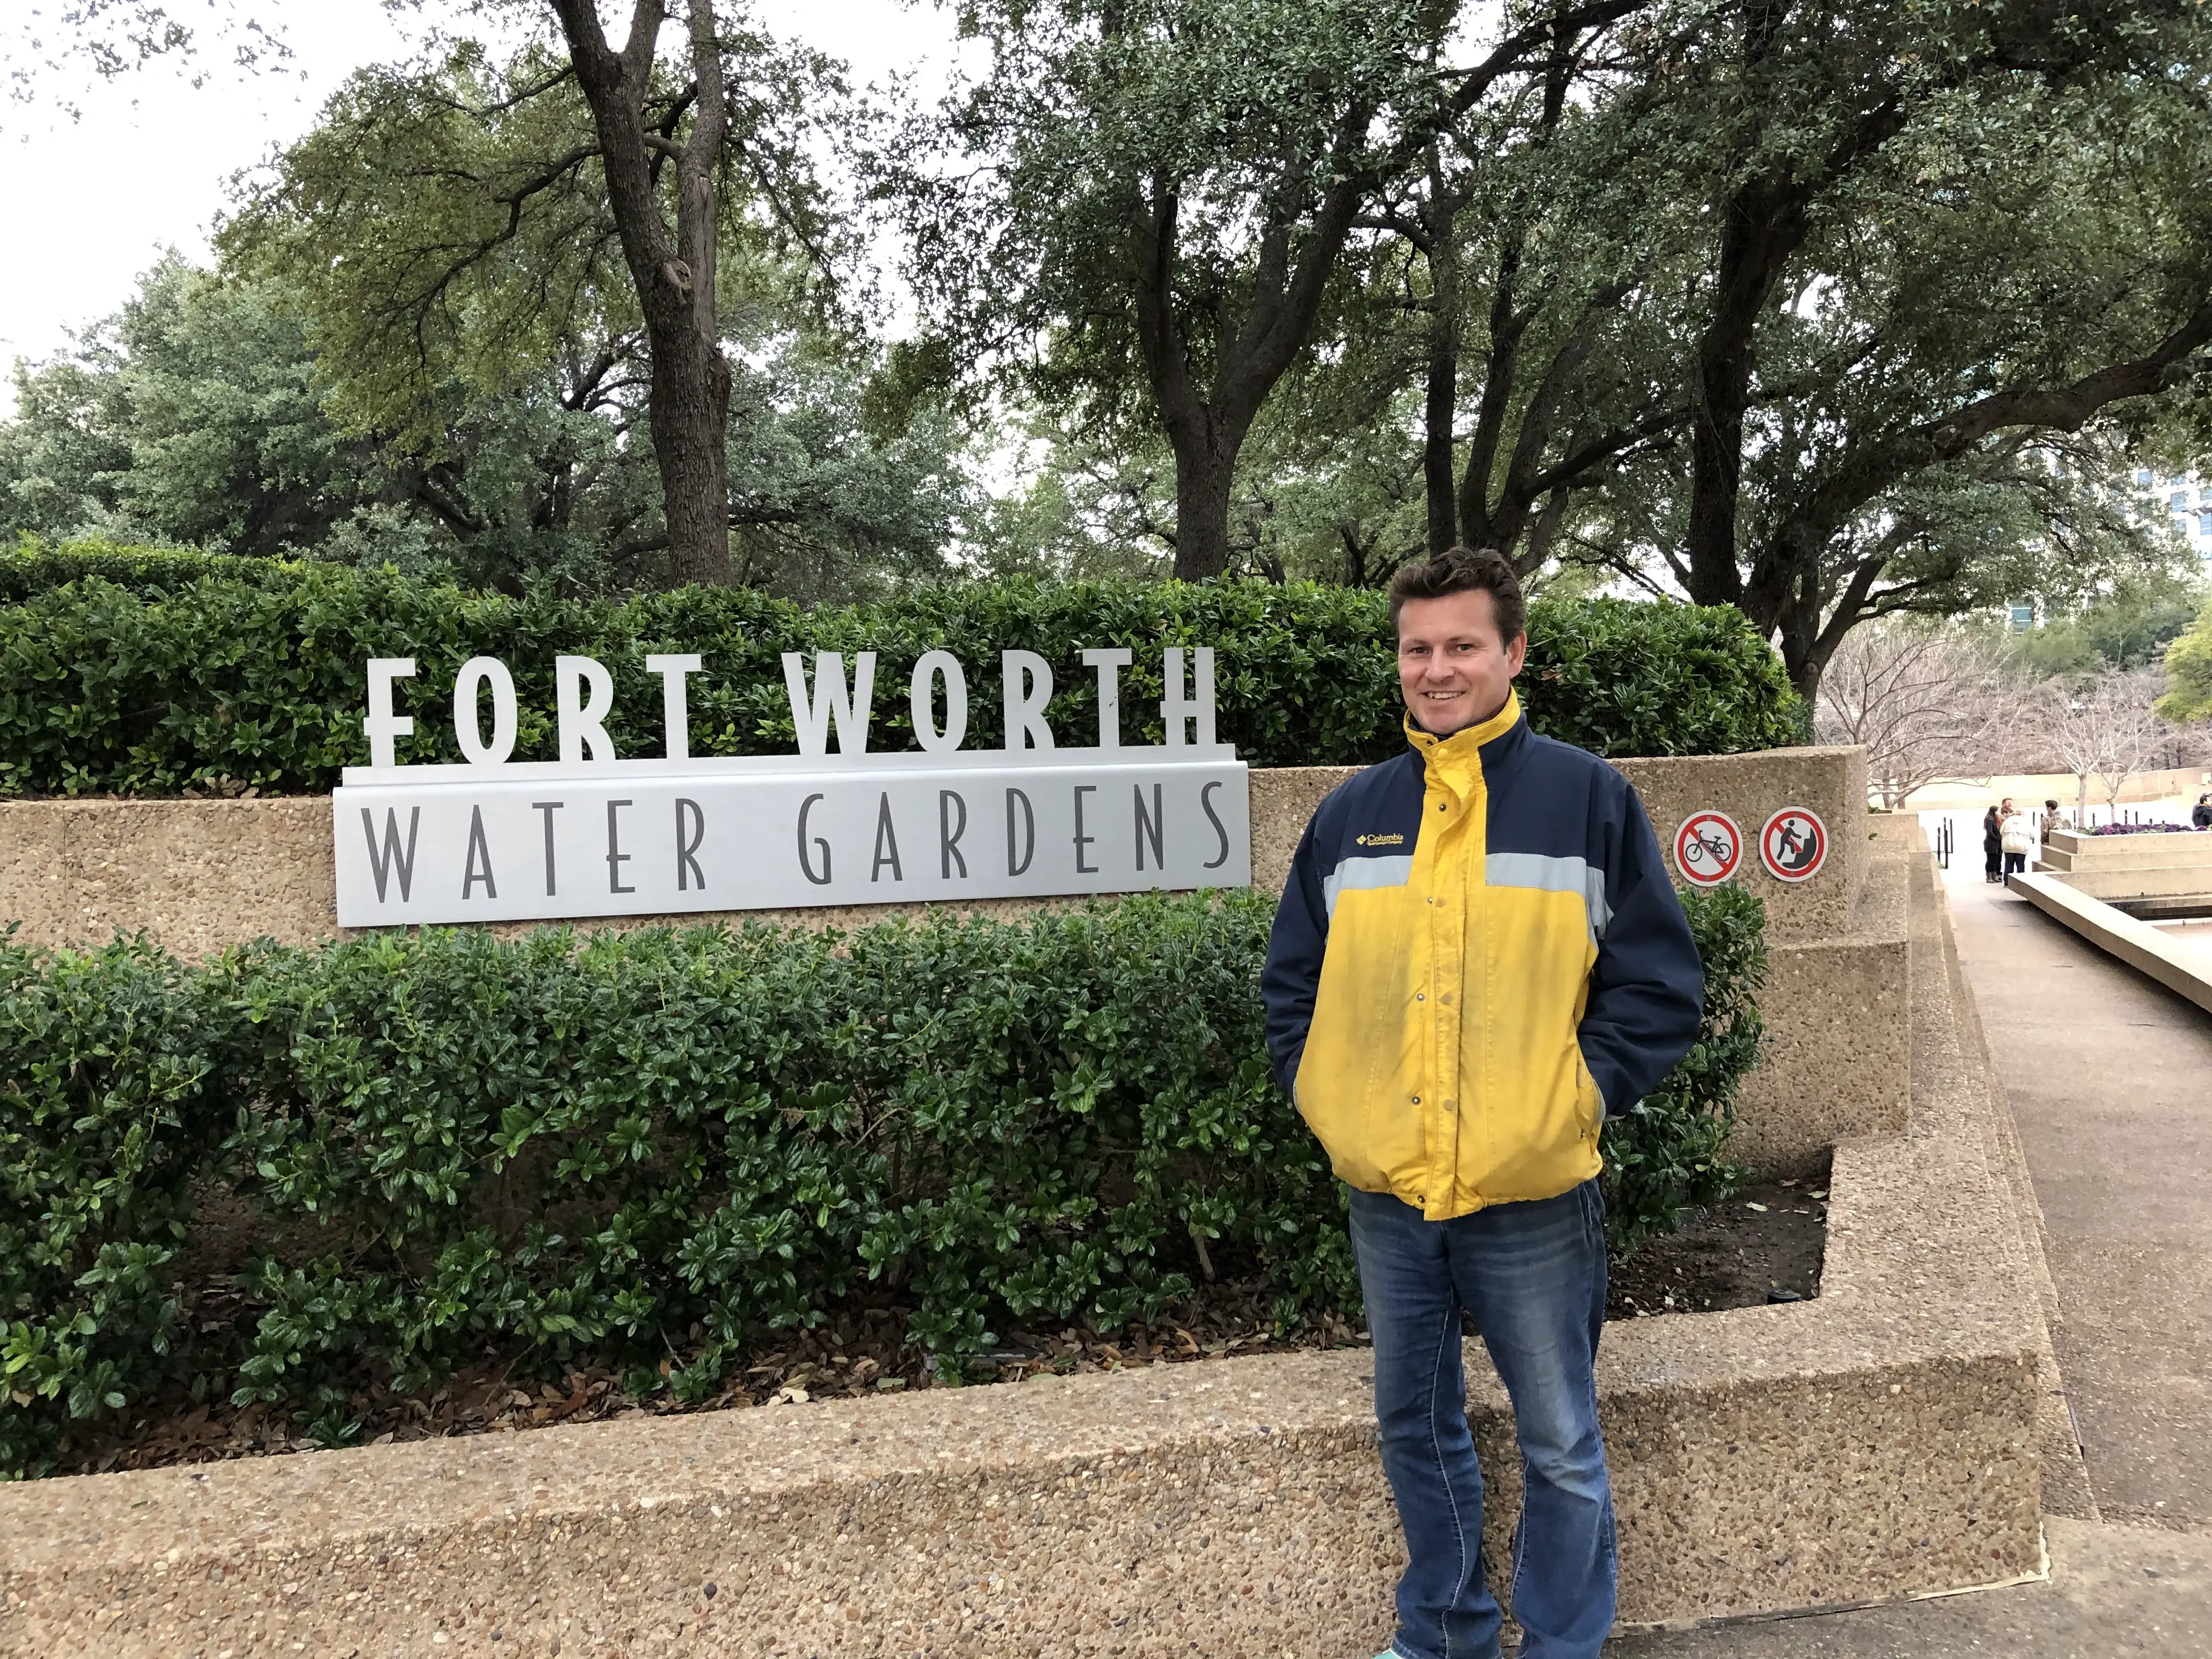 Ft. Worth Water Gardens